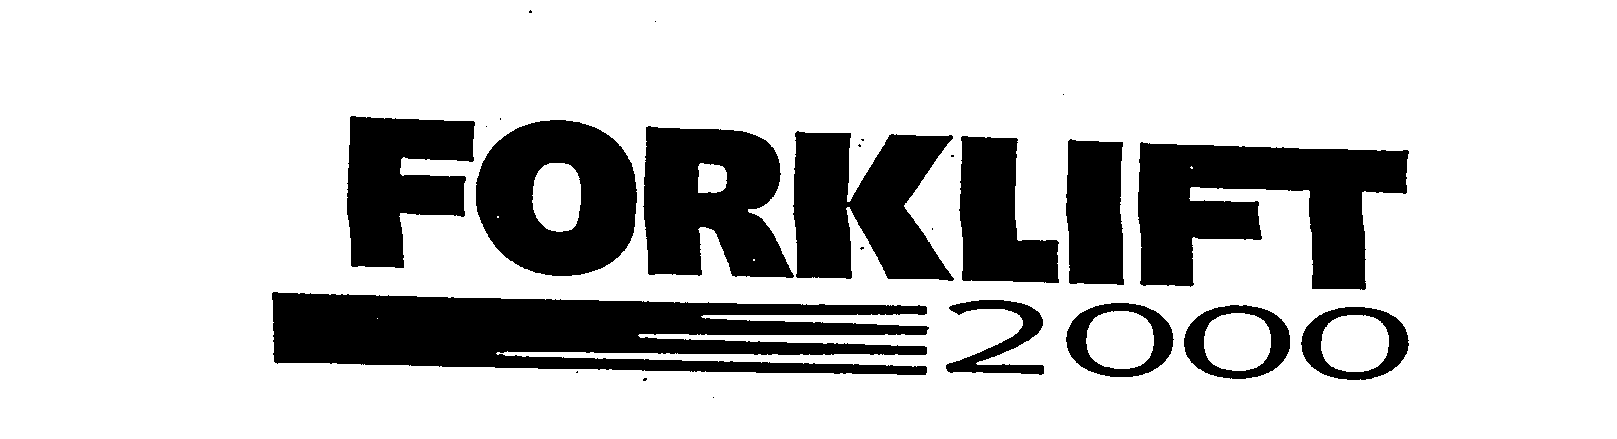  FORKLIFT 2000